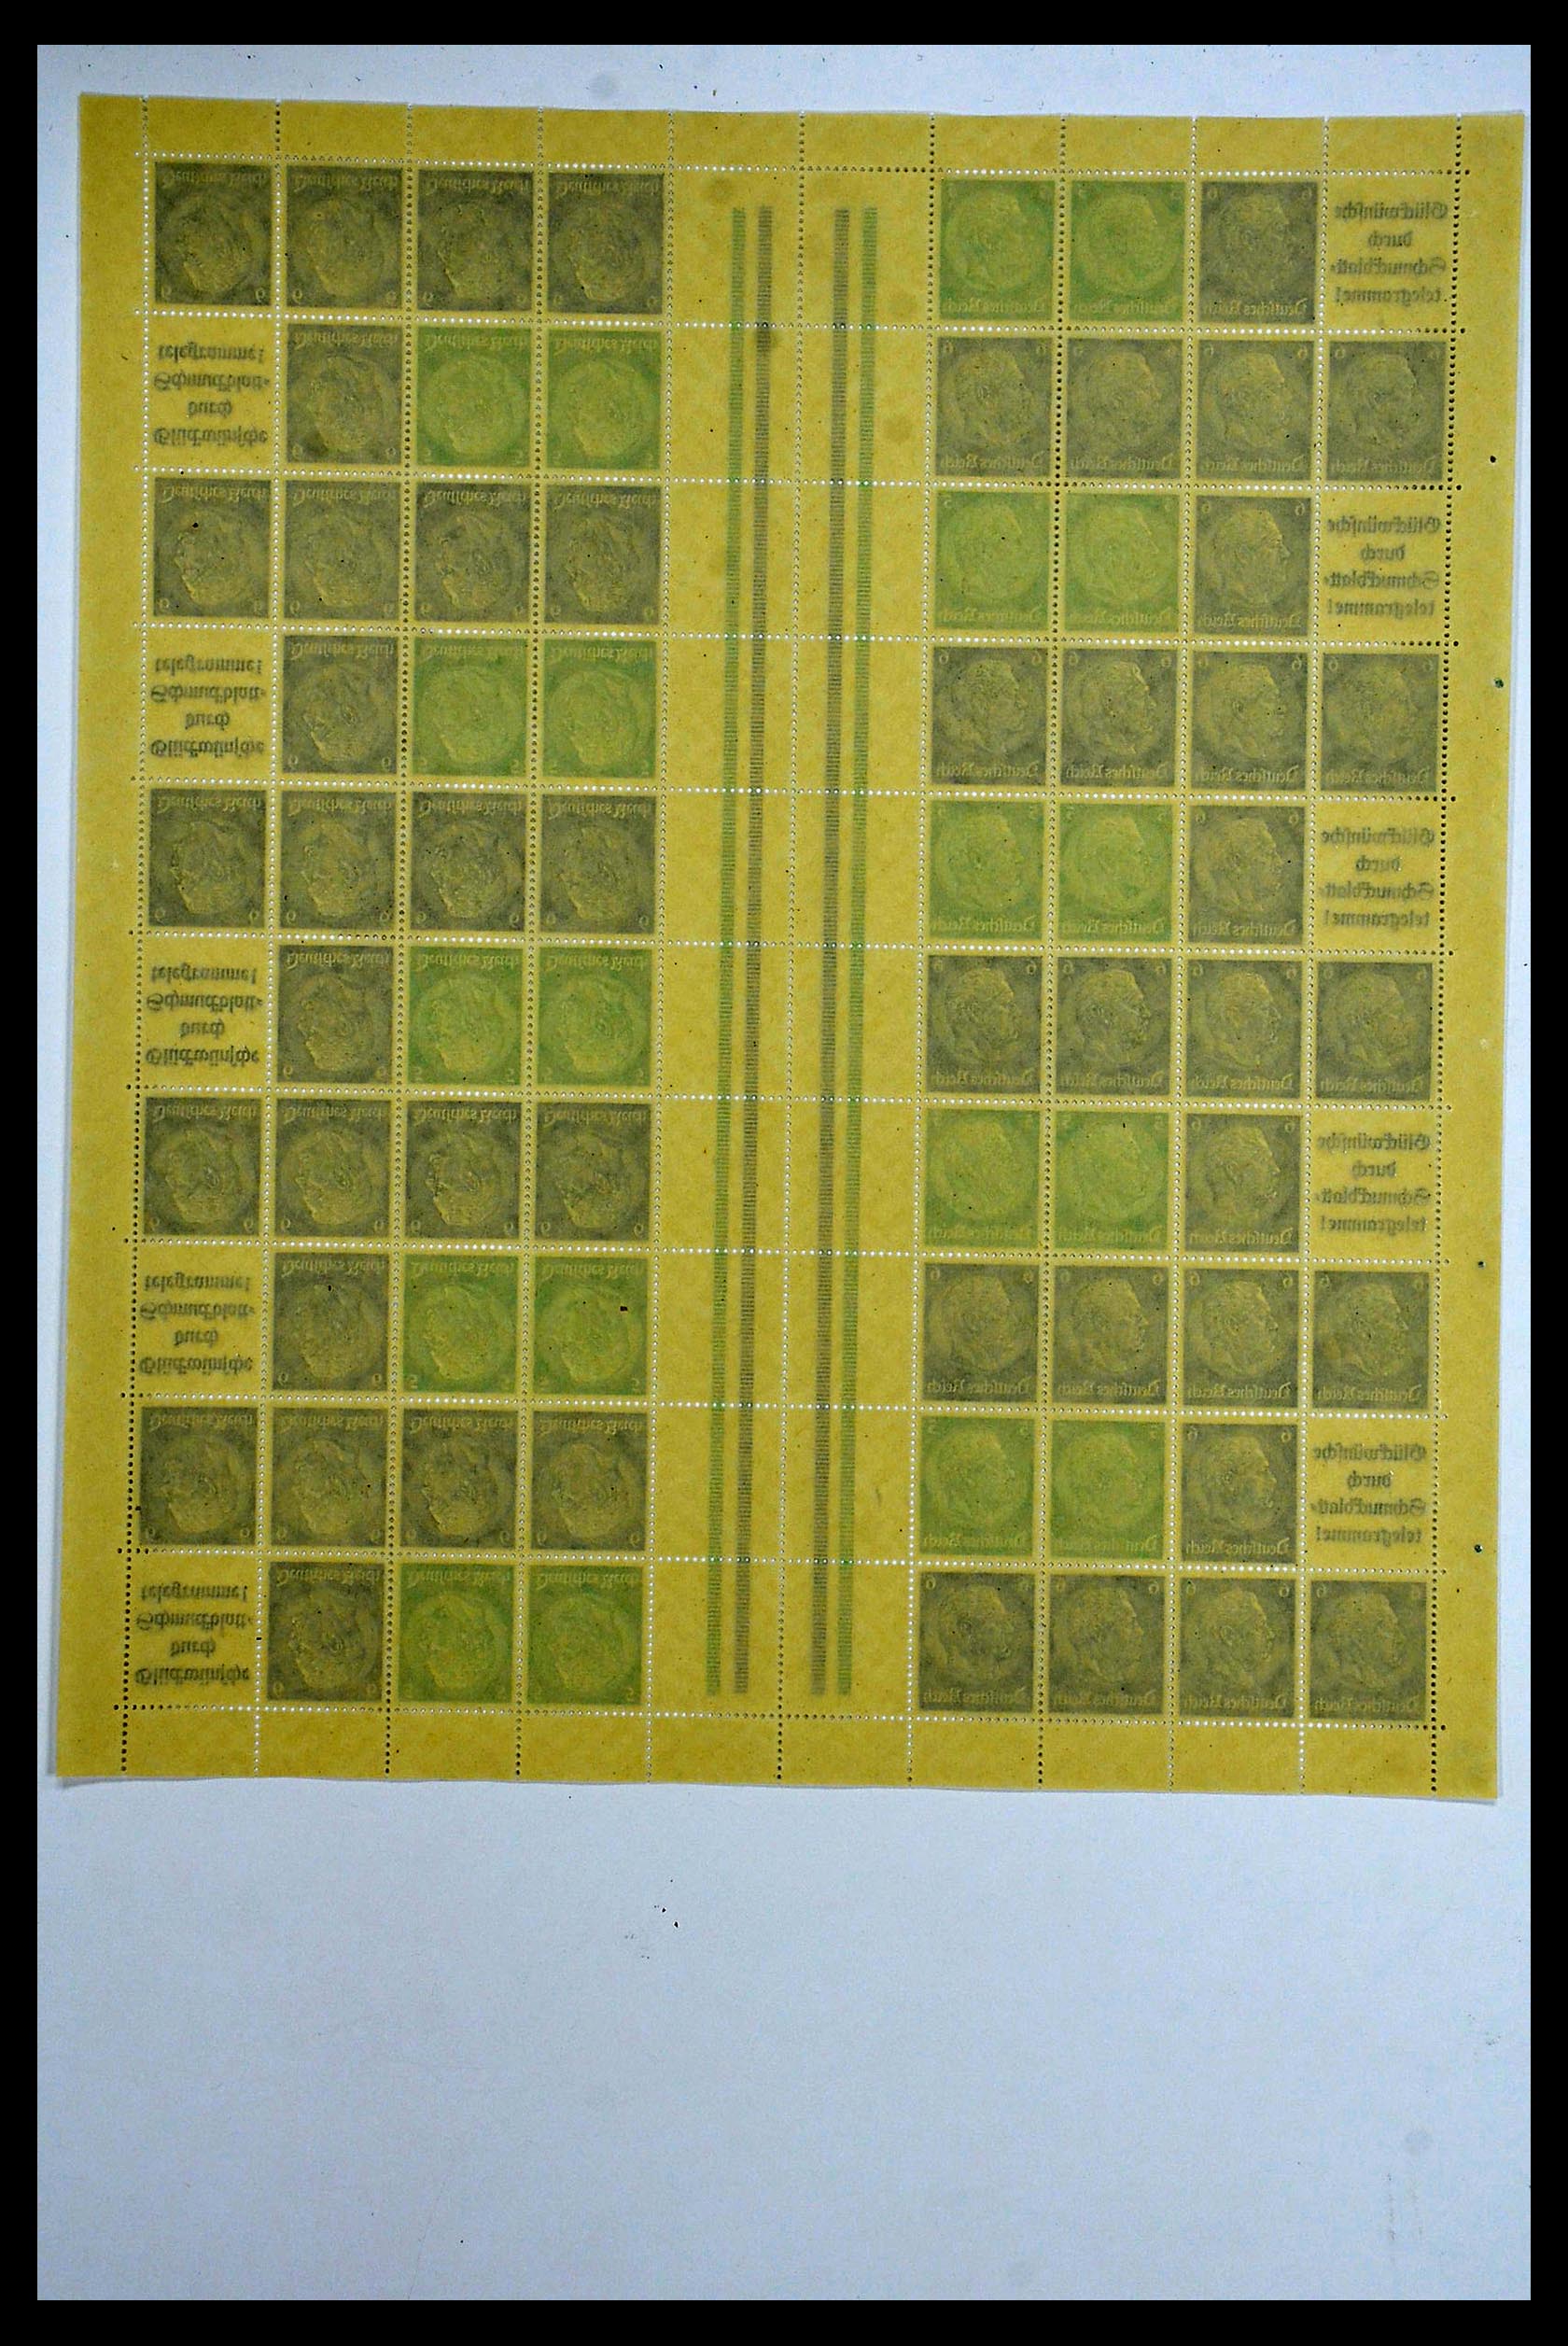 34164 038 - Stamp collection 34164 German Reich Markenheftchenbogen 1933-1942.